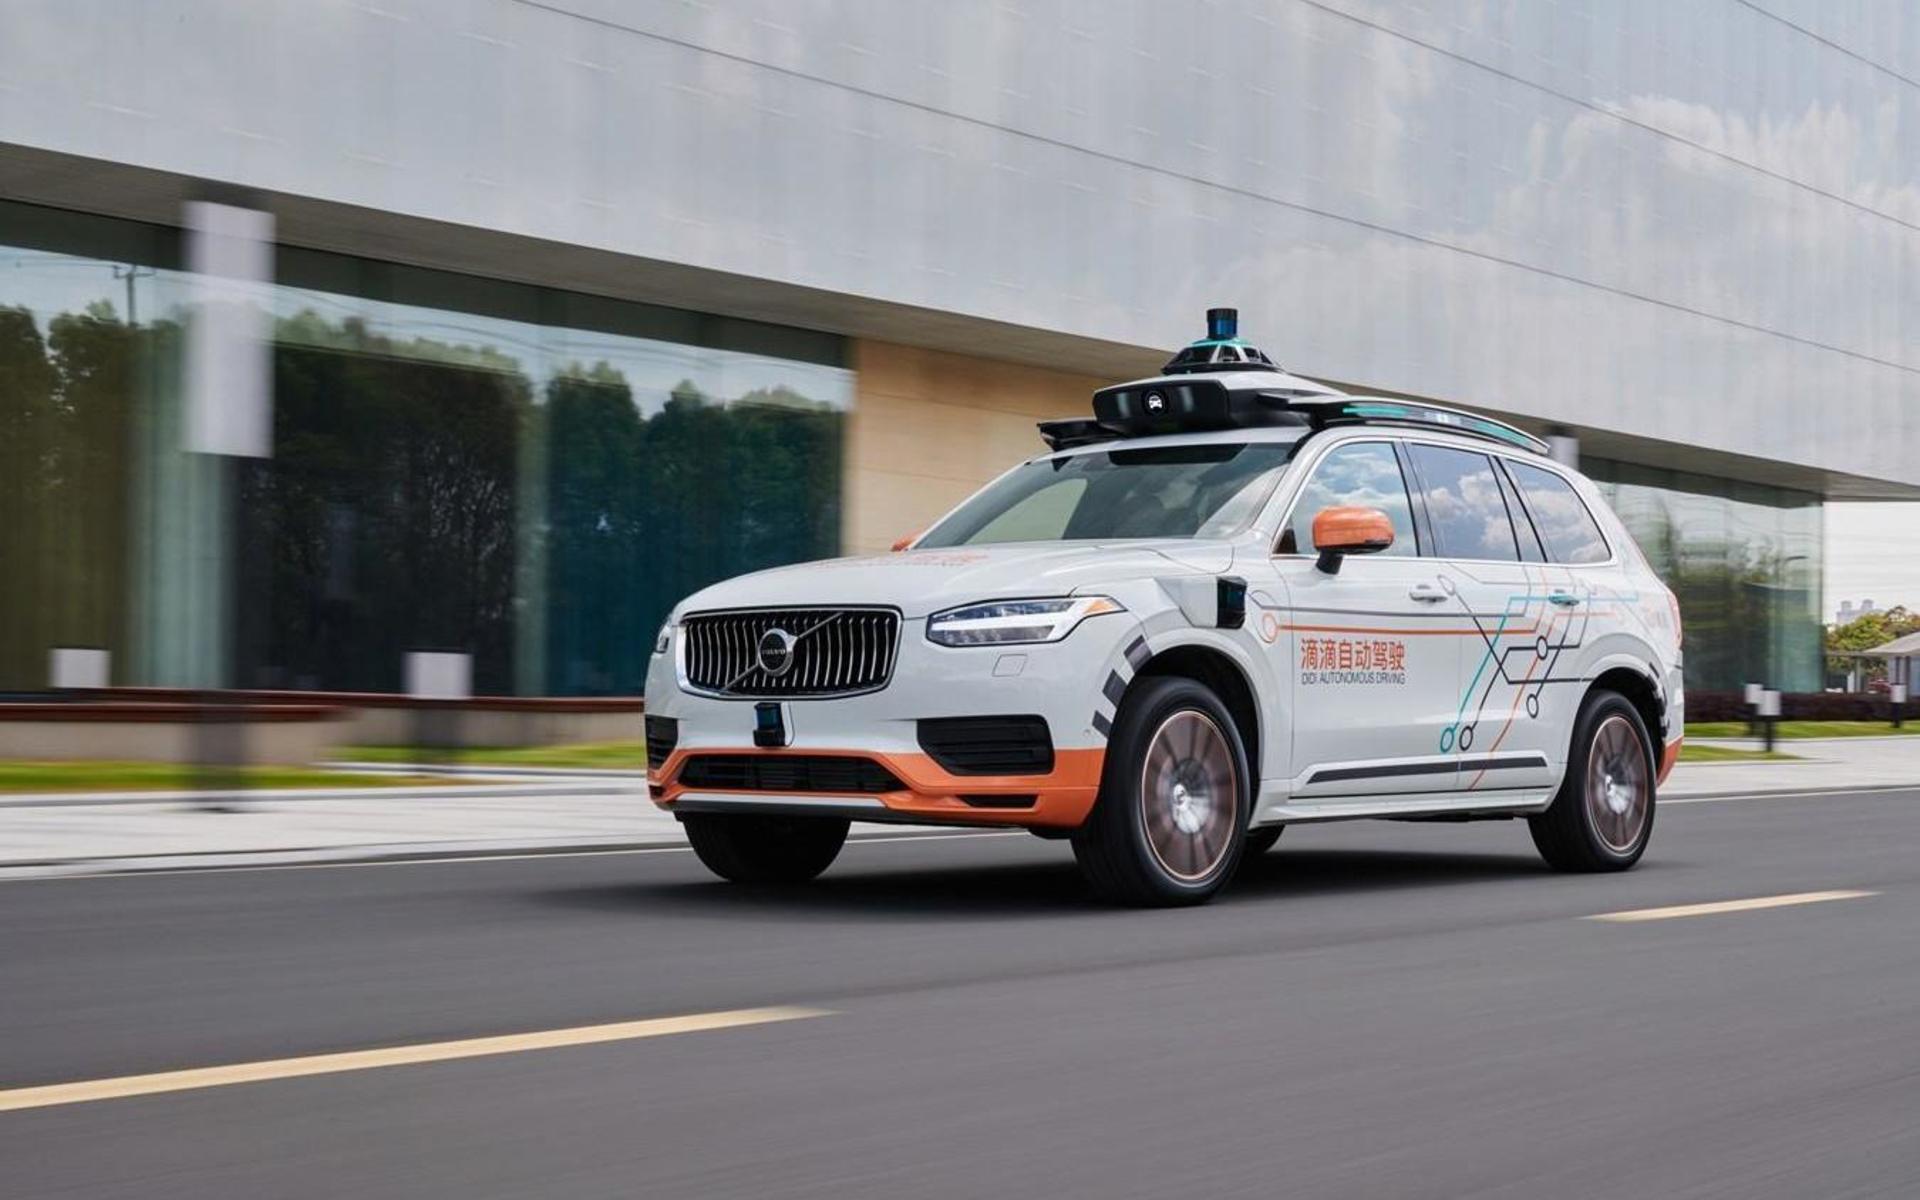 Tanken är att samarbetet mellan Volvo Cars och DiDi Chuxing ska utveckla DiDis taxiverksamhet med självkörande bilar.